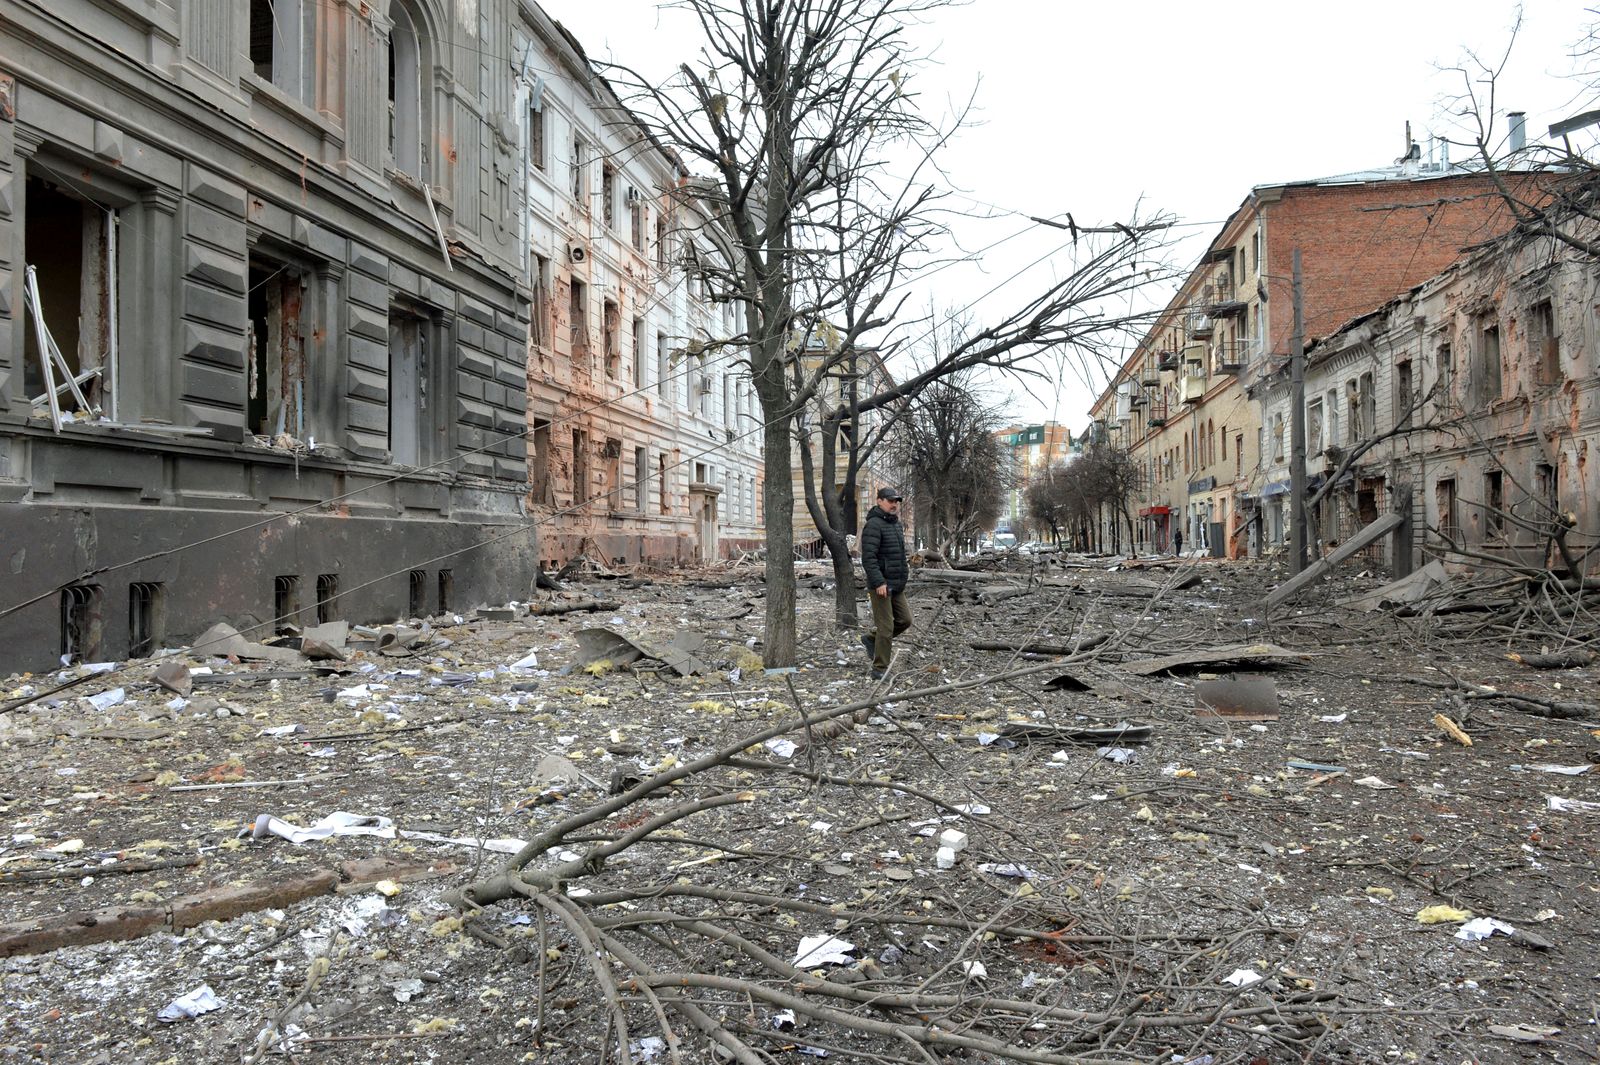 جانب من الدمار في مدينة خاركيف شرق أوكرانيا بسبب المعارك بين القوات الروسية والأوكرانية 7 مارس 2022 - AFP